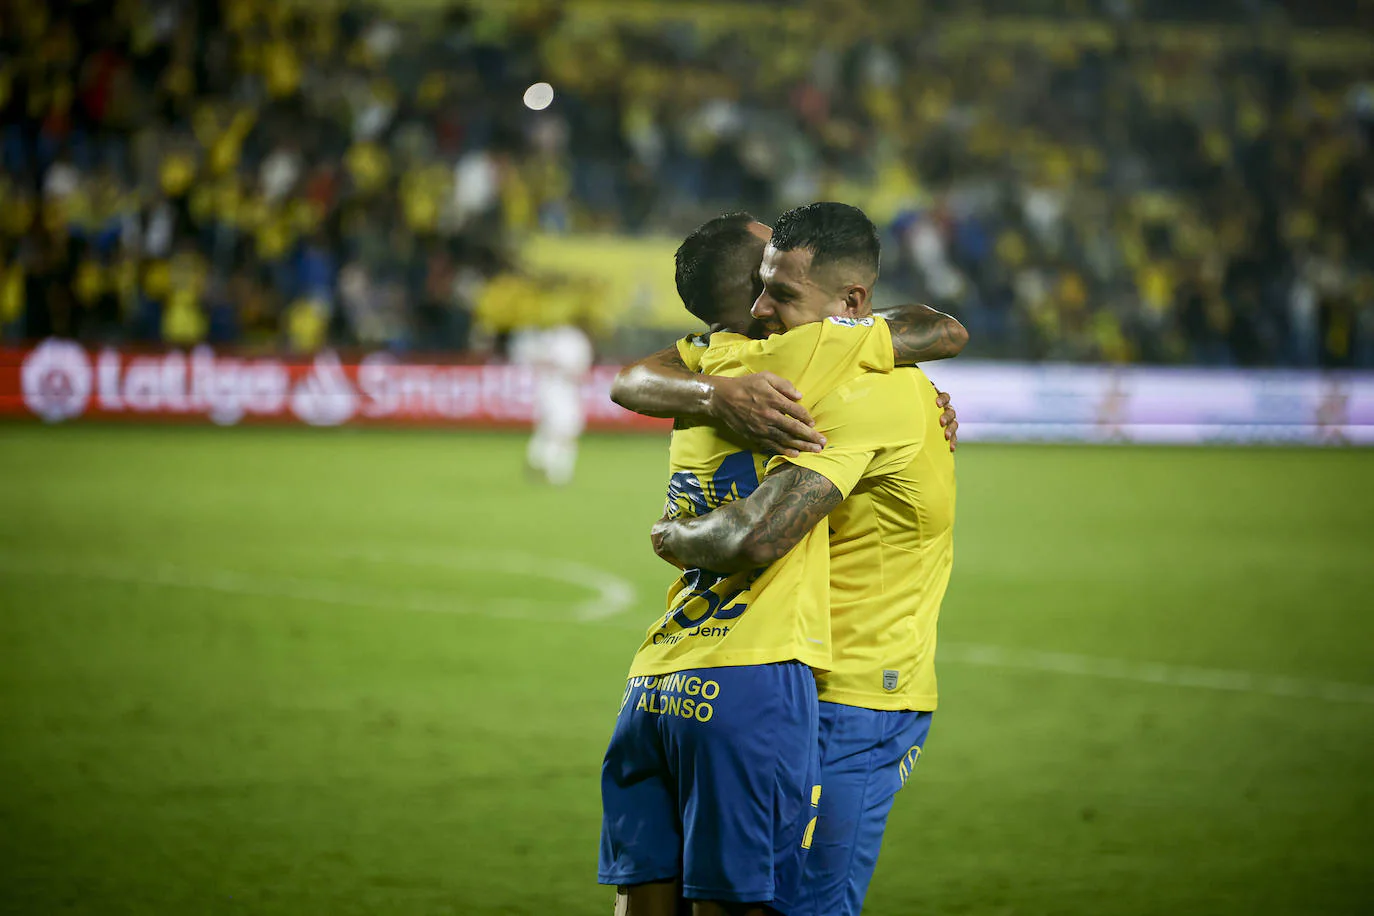 Viera y Vitolo se funden en un abrazo tras el gol al Cartagena. /cober